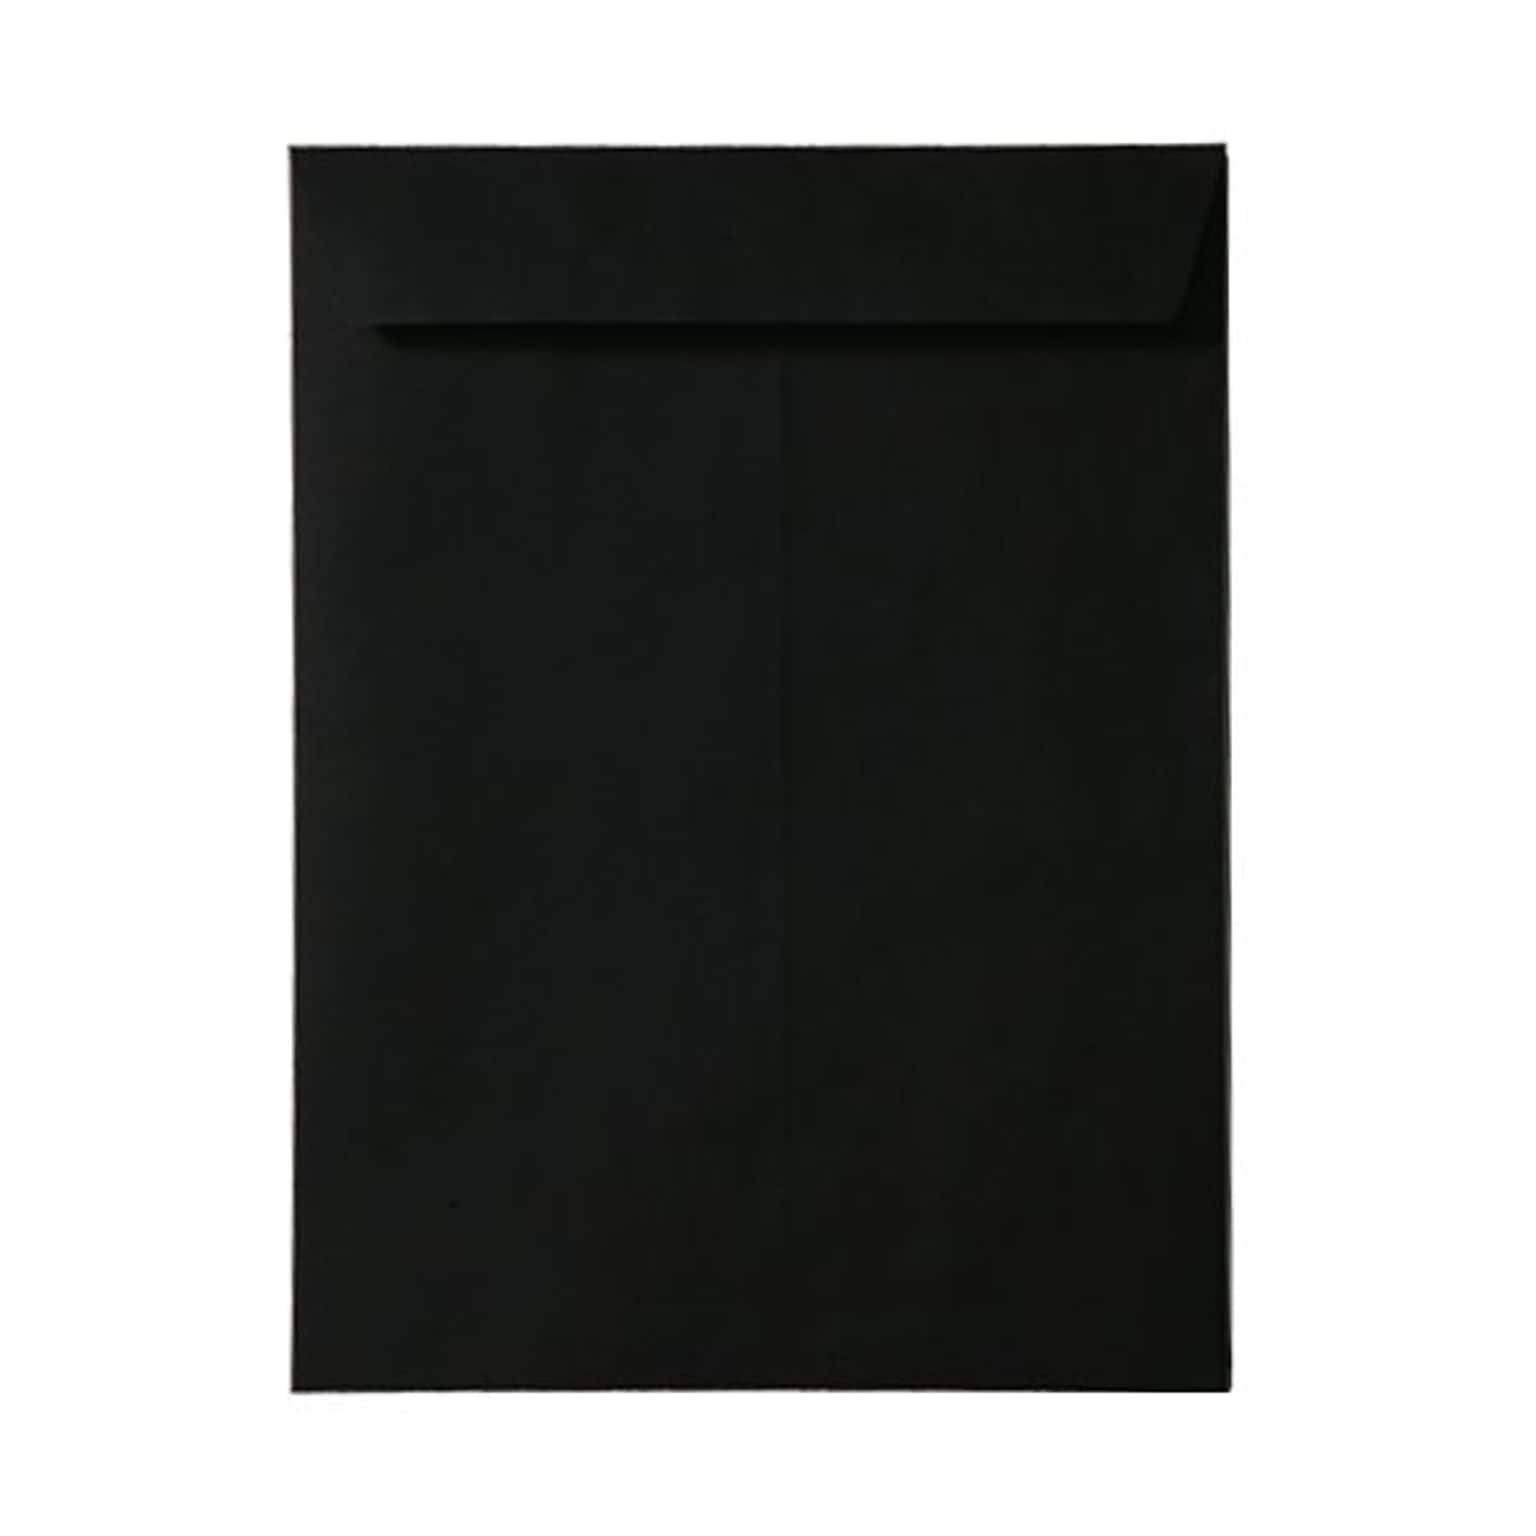 JAM Paper Open End Catalog Envelope, 9 x 12, Black, 100/Box (V01225)